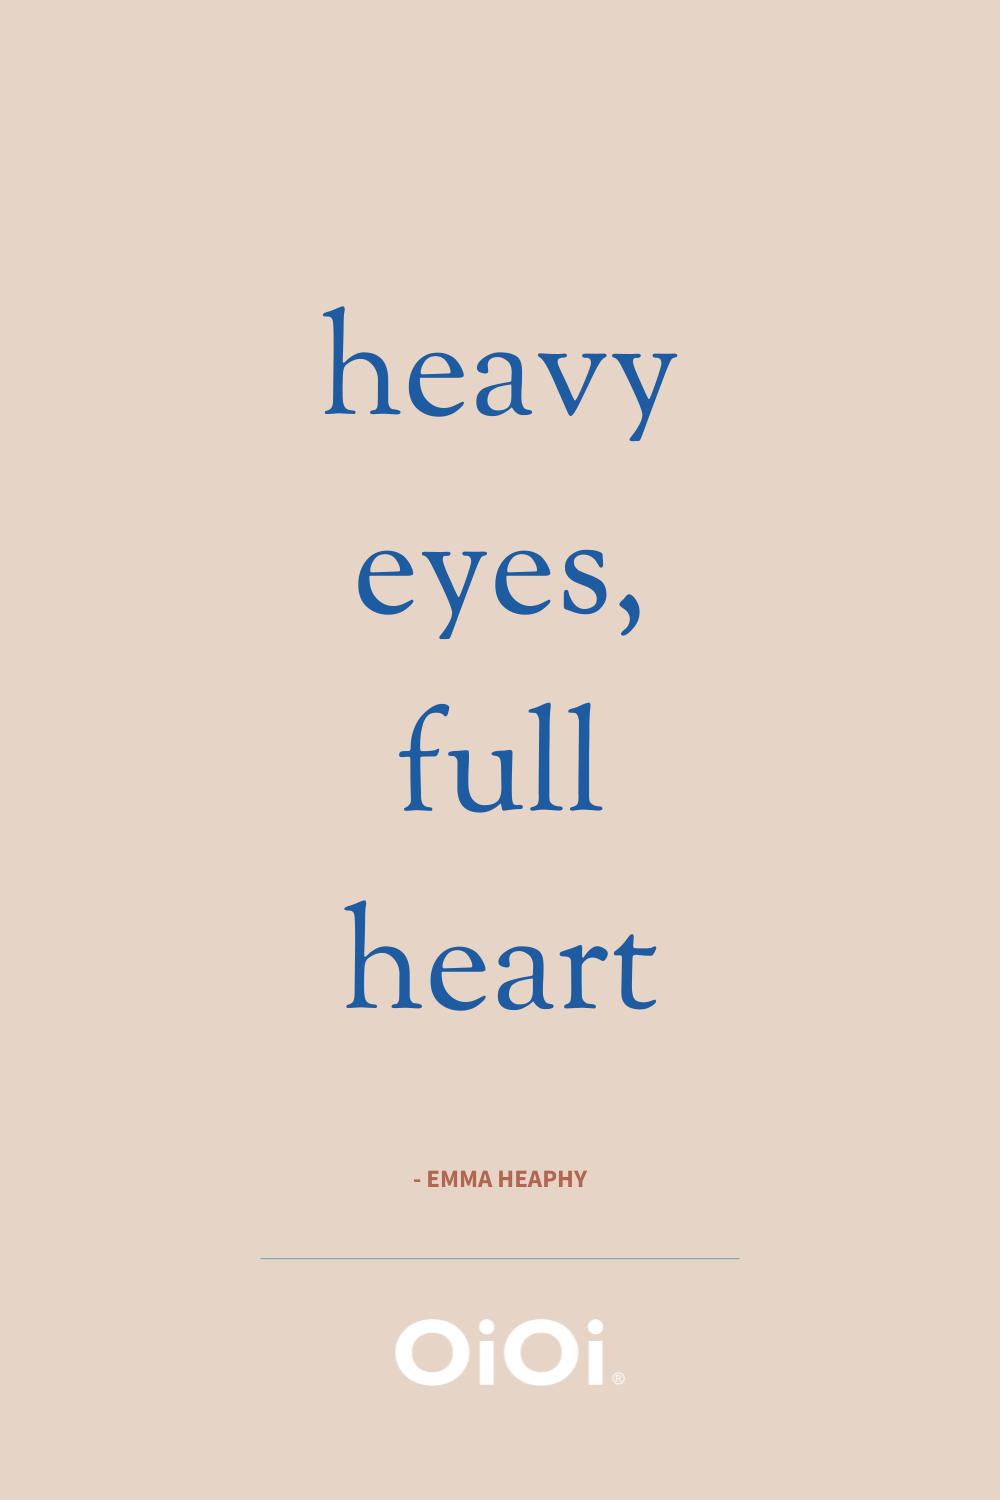 quote: heavy eyes, full heart